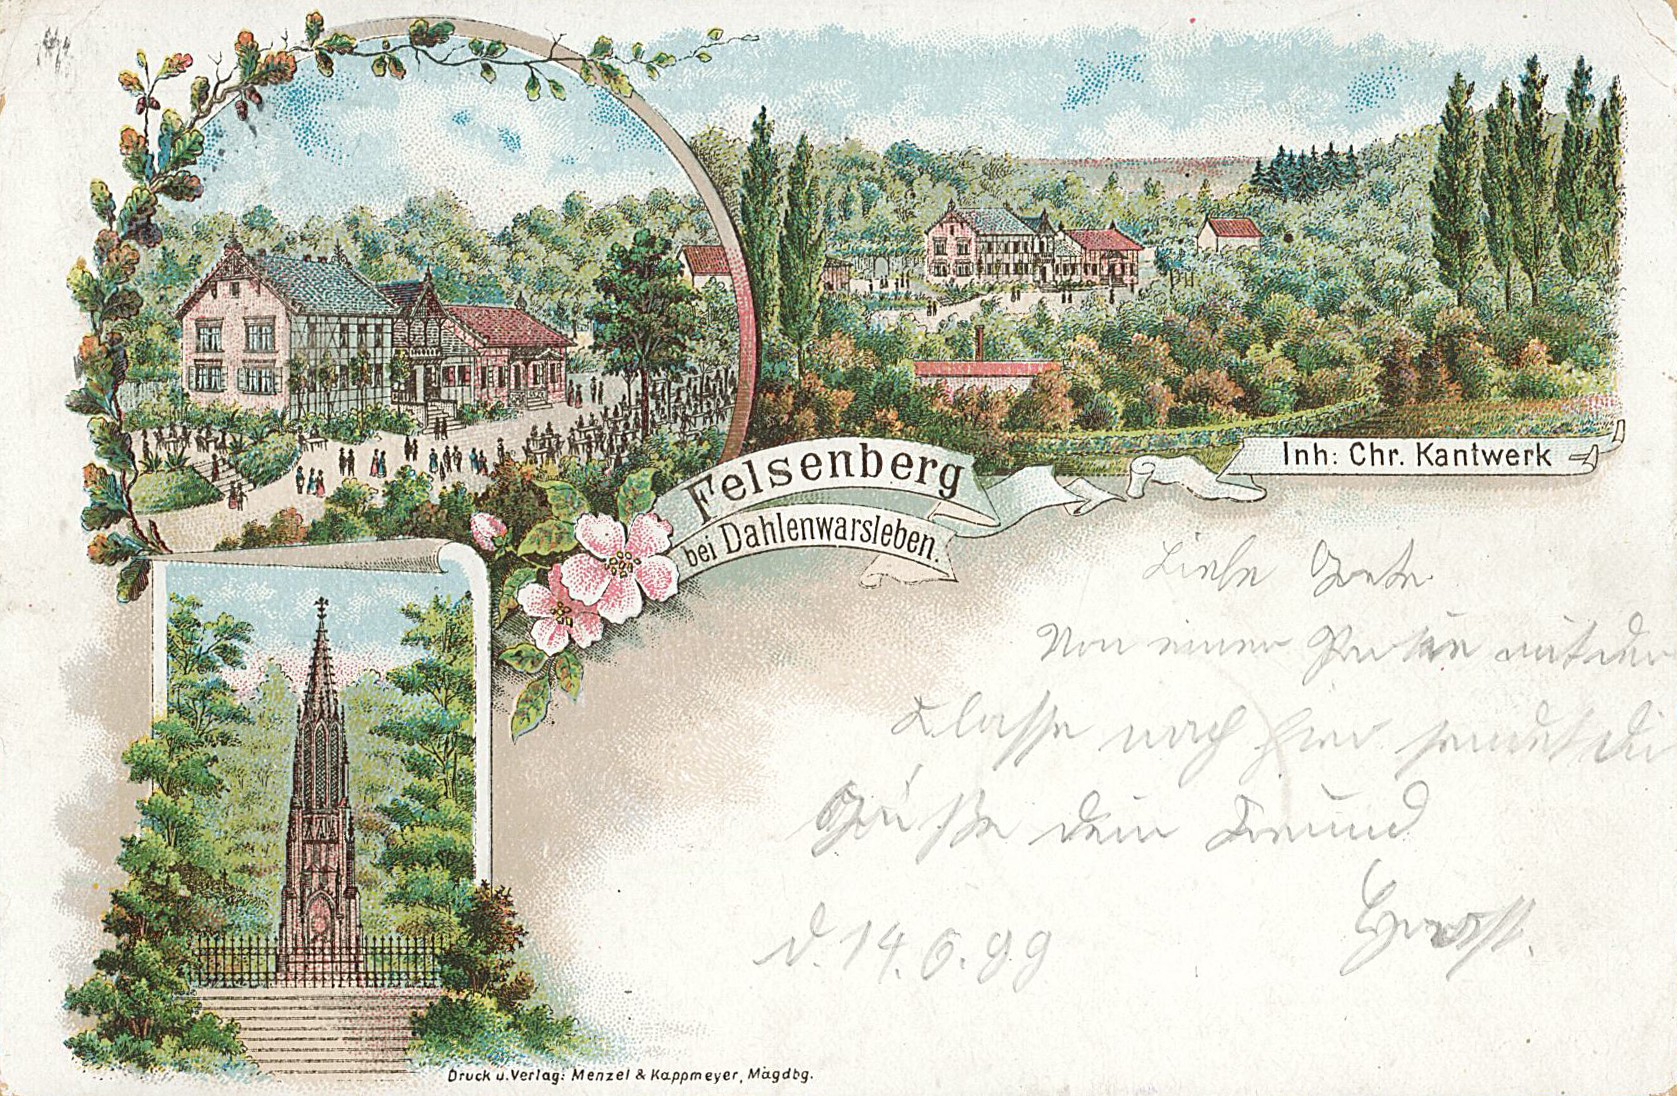 Postkarte "Felsenberg bei Dahlenwarsleben", 14.06.1899 (Museum Wolmirstedt RR-F)